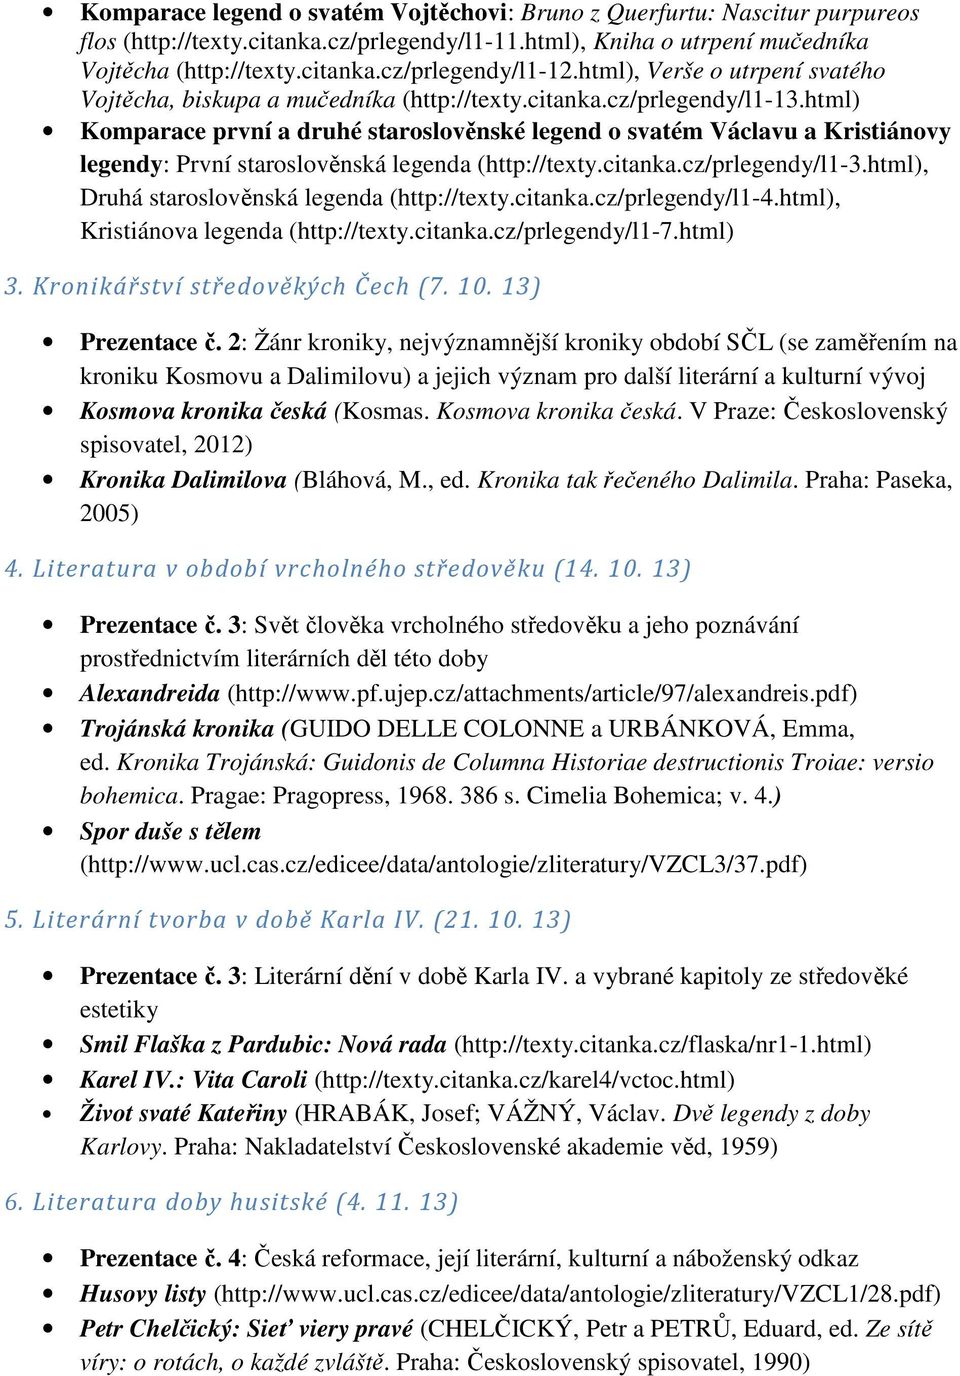 html) Komparace první a druhé staroslověnské legend o svatém Václavu a Kristiánovy legendy: První staroslověnská legenda (http://texty.citanka.cz/prlegendy/l1-3.